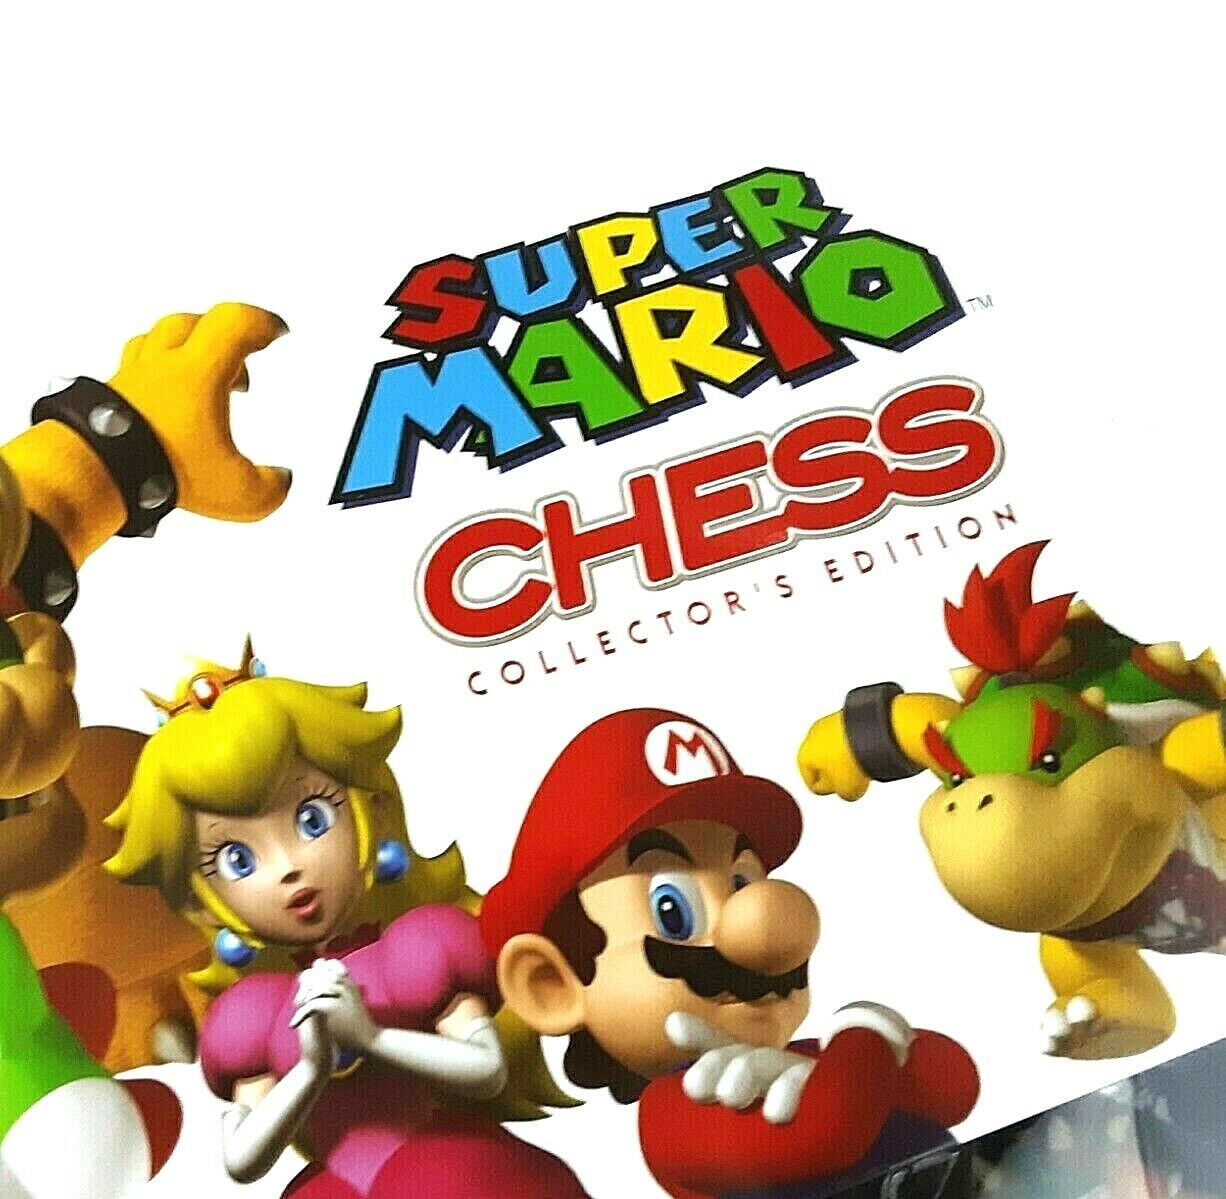 Super Mario Chess Set Collectors Edition Open Box Complete Lui...